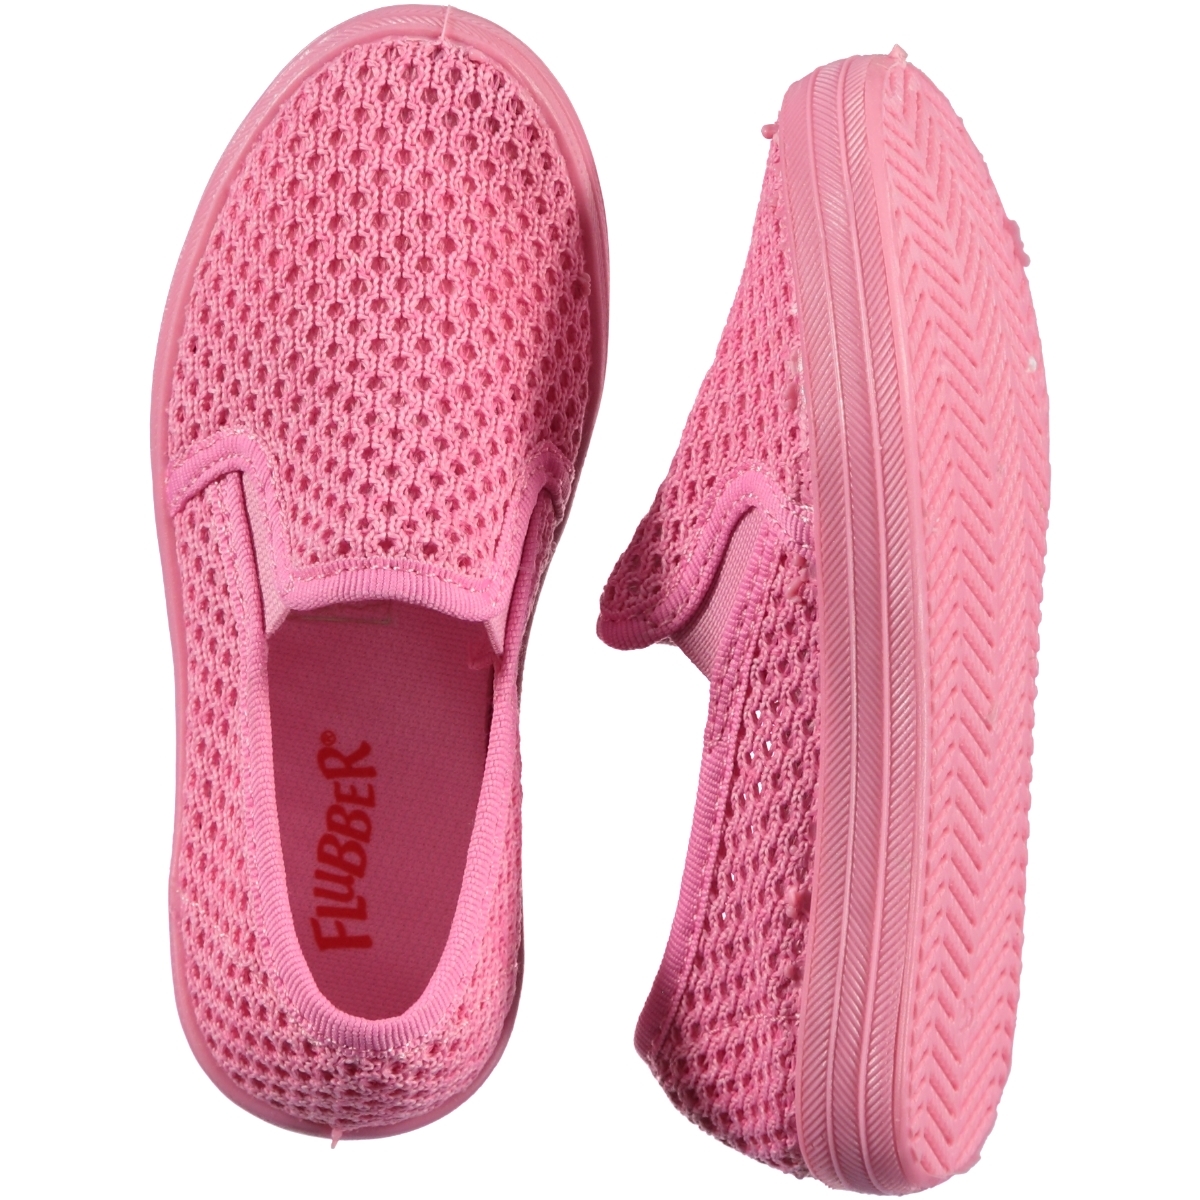 Flubber Kız Çocuk Ayakkabı 26-30 Numara Pembe